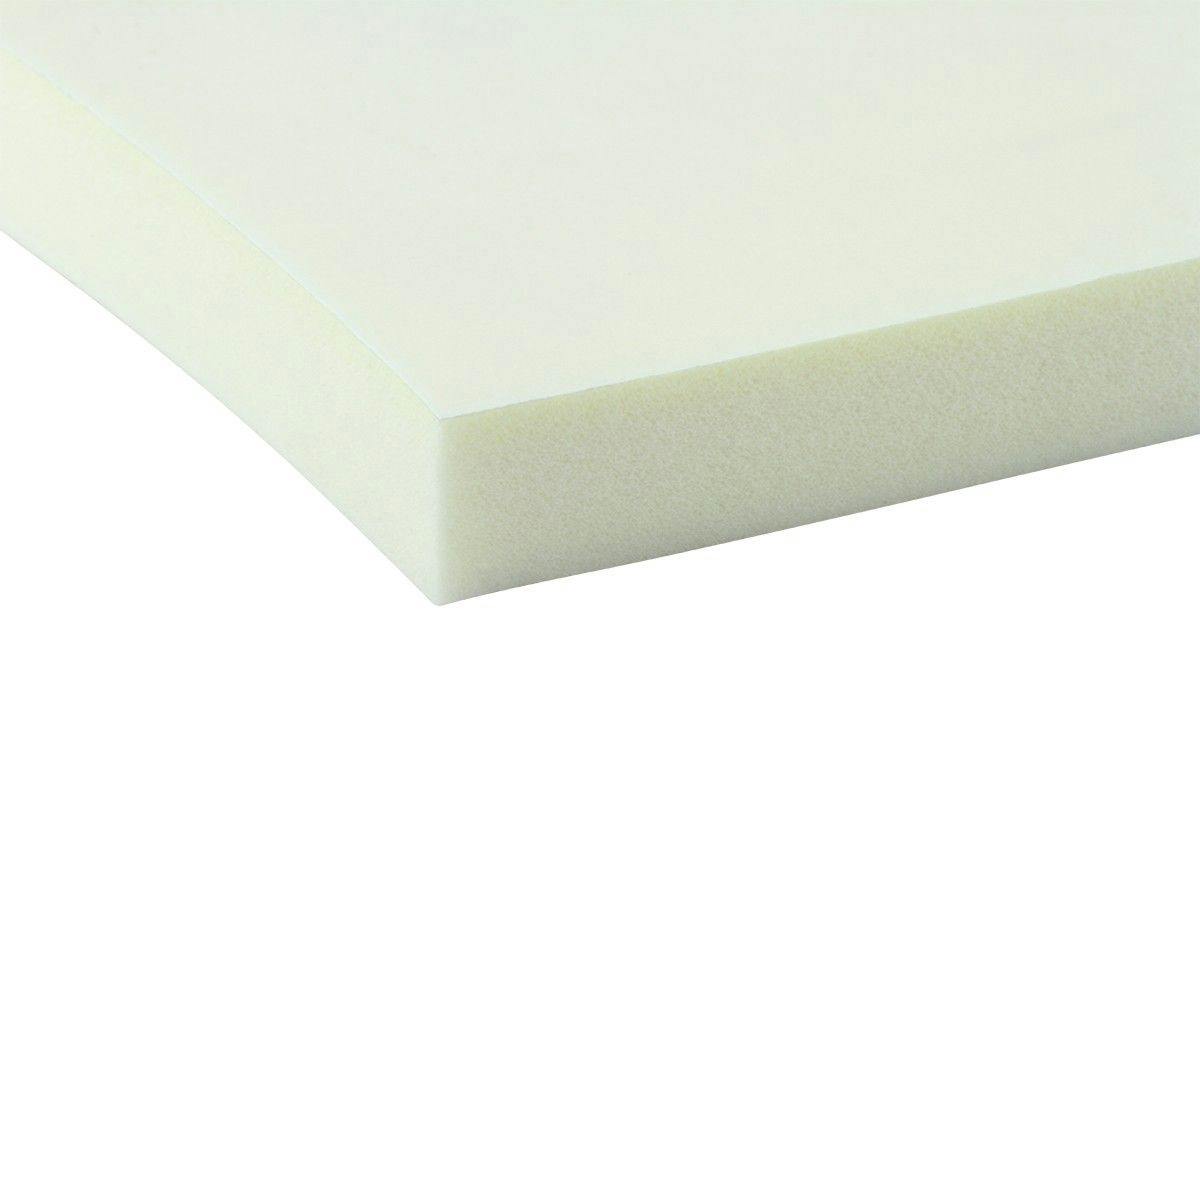 EKI 2035 PVC foam white